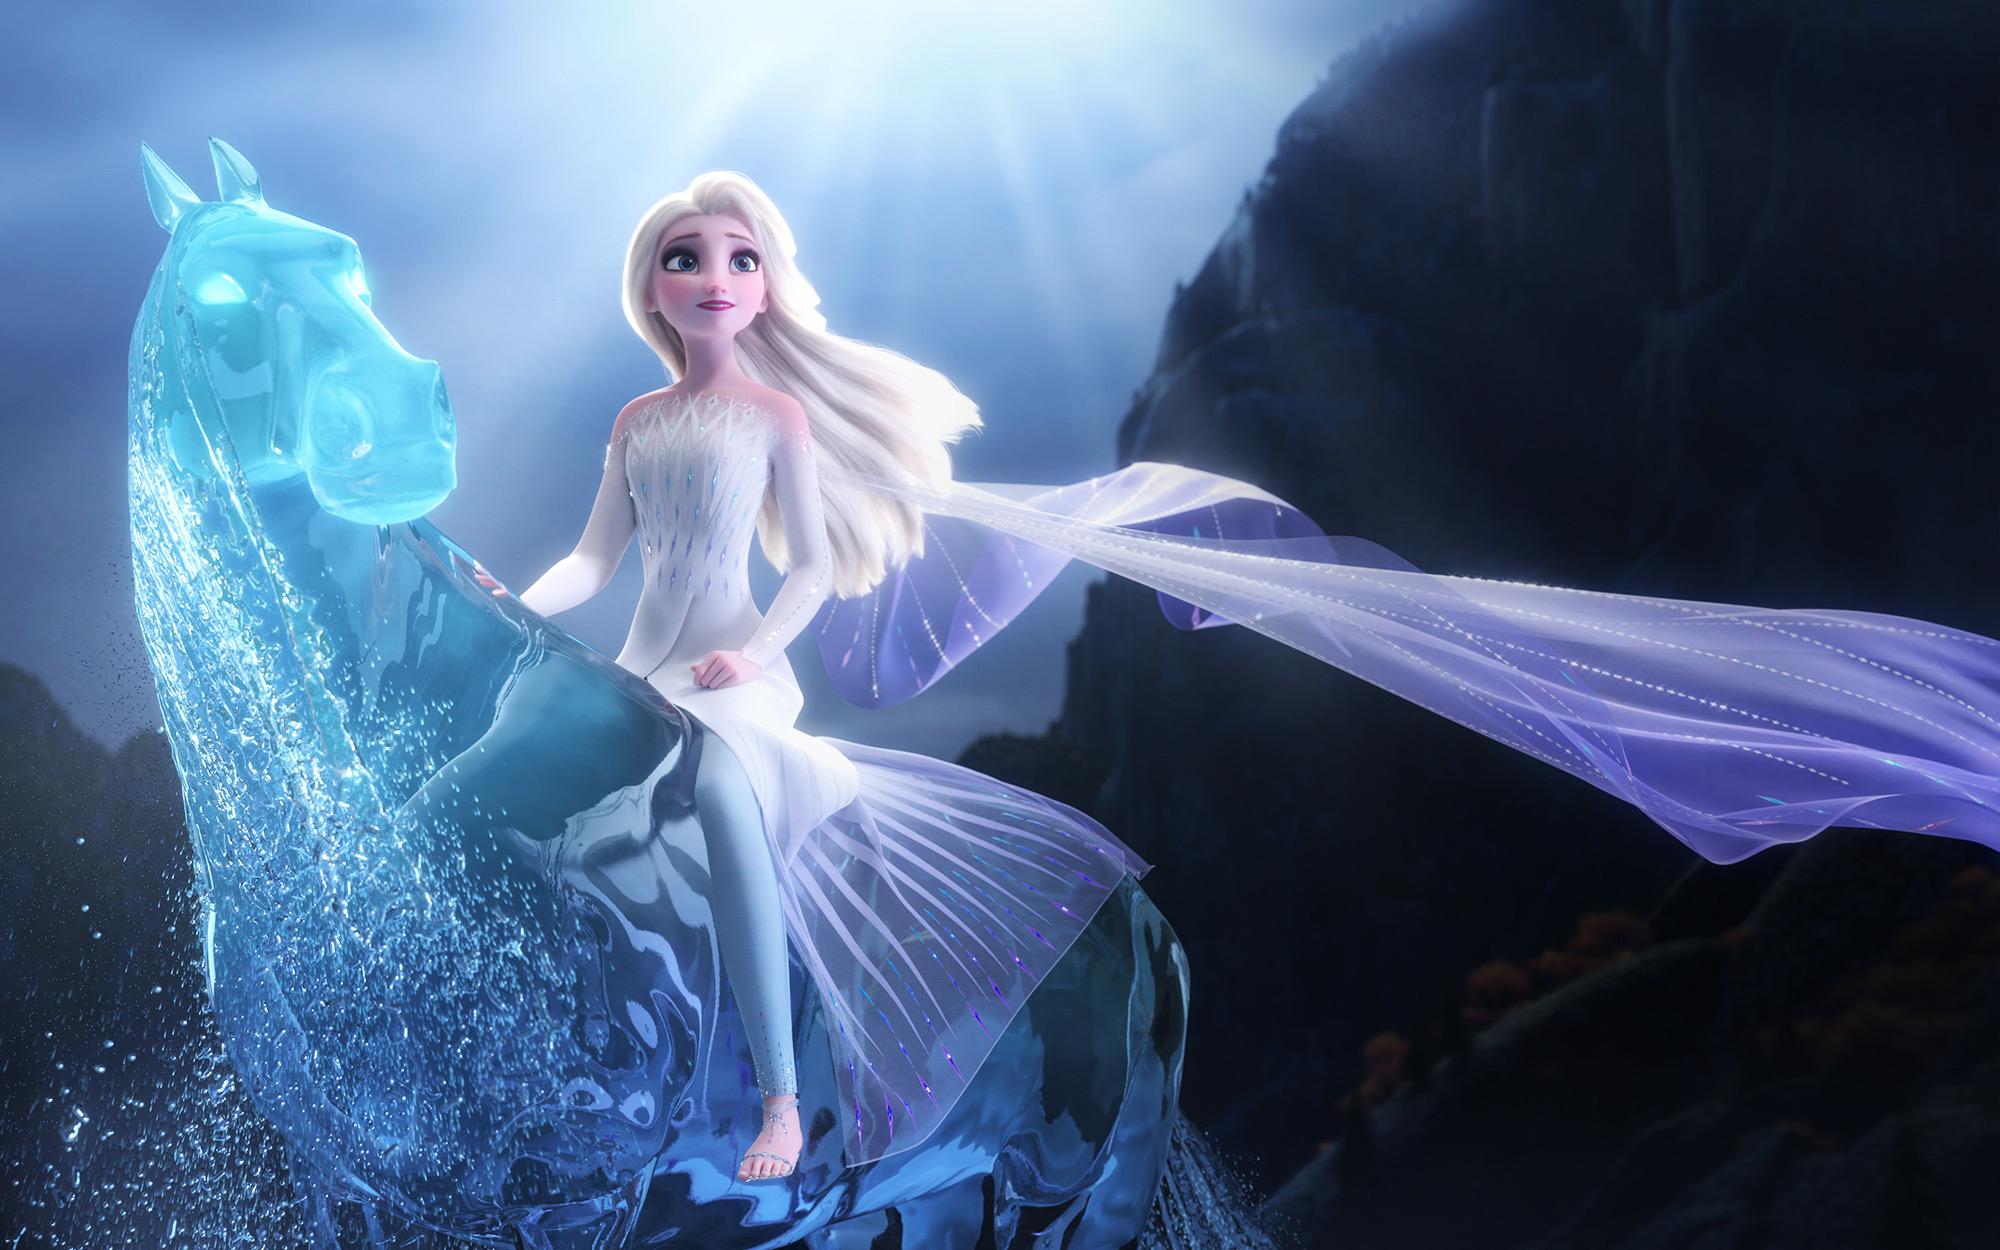 Frozen - Uma Aventura Congelante Papel de Parede and Background Image ...